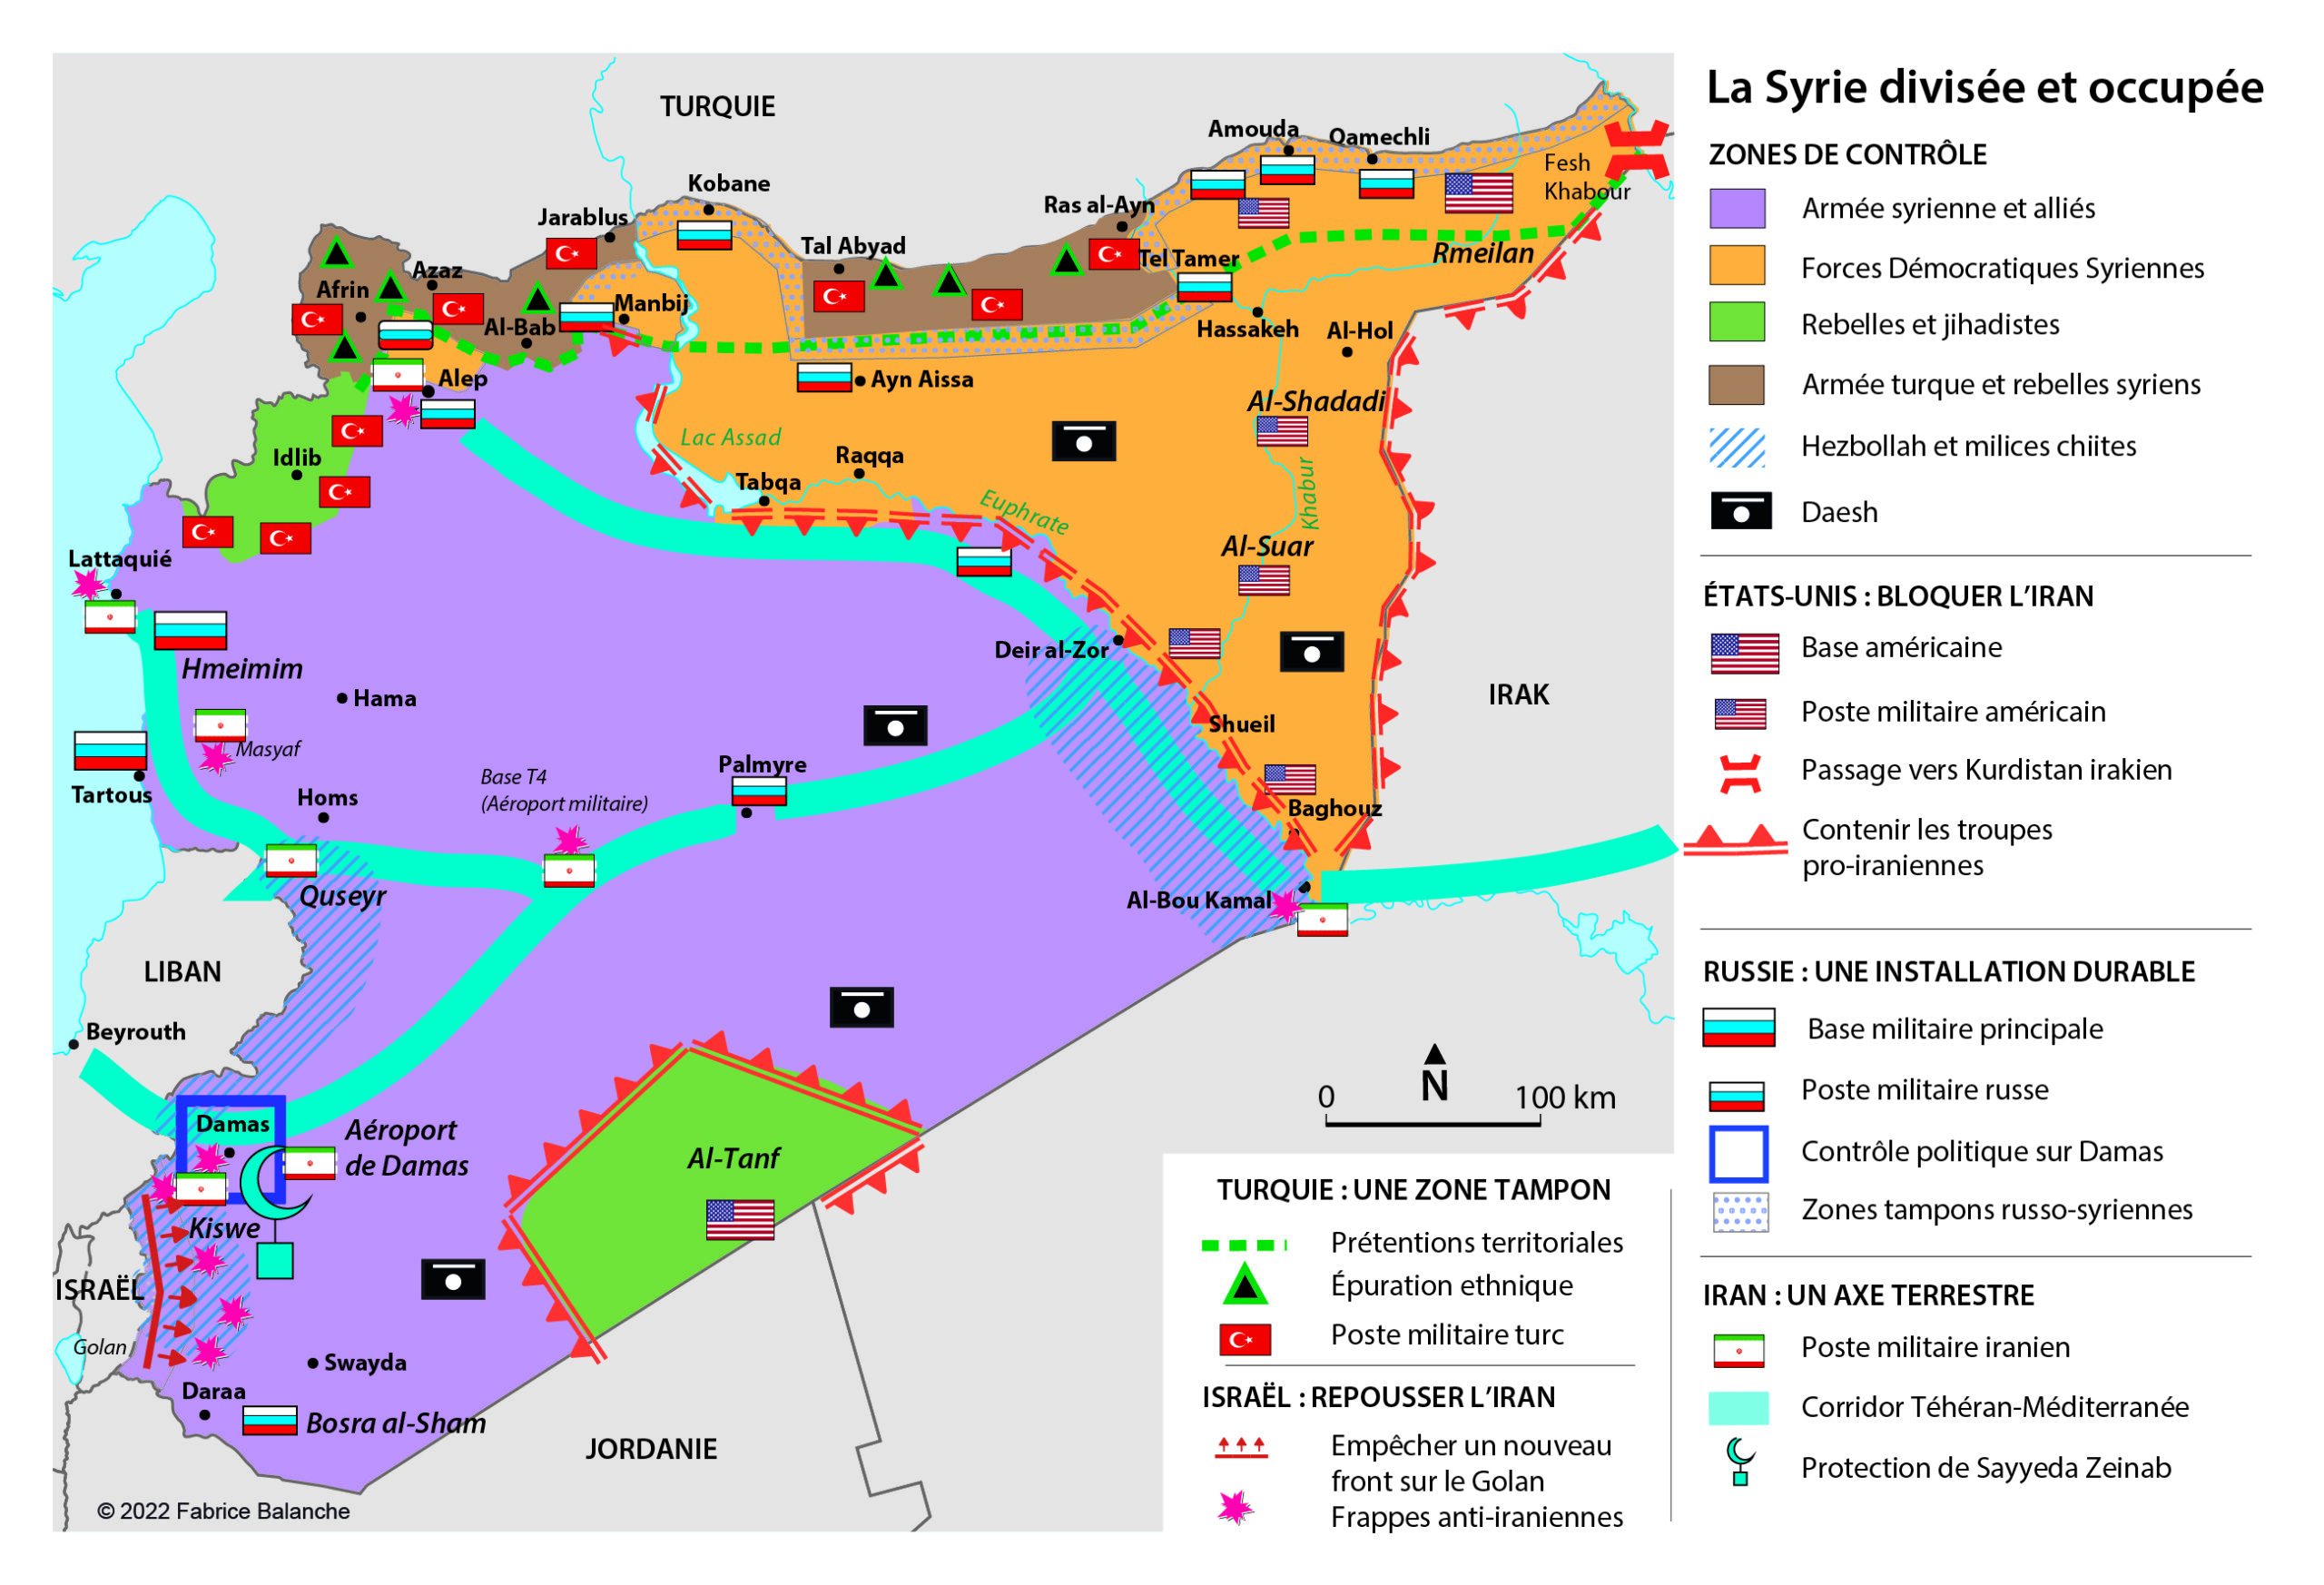 La Syrie divisée et occupée en 2022